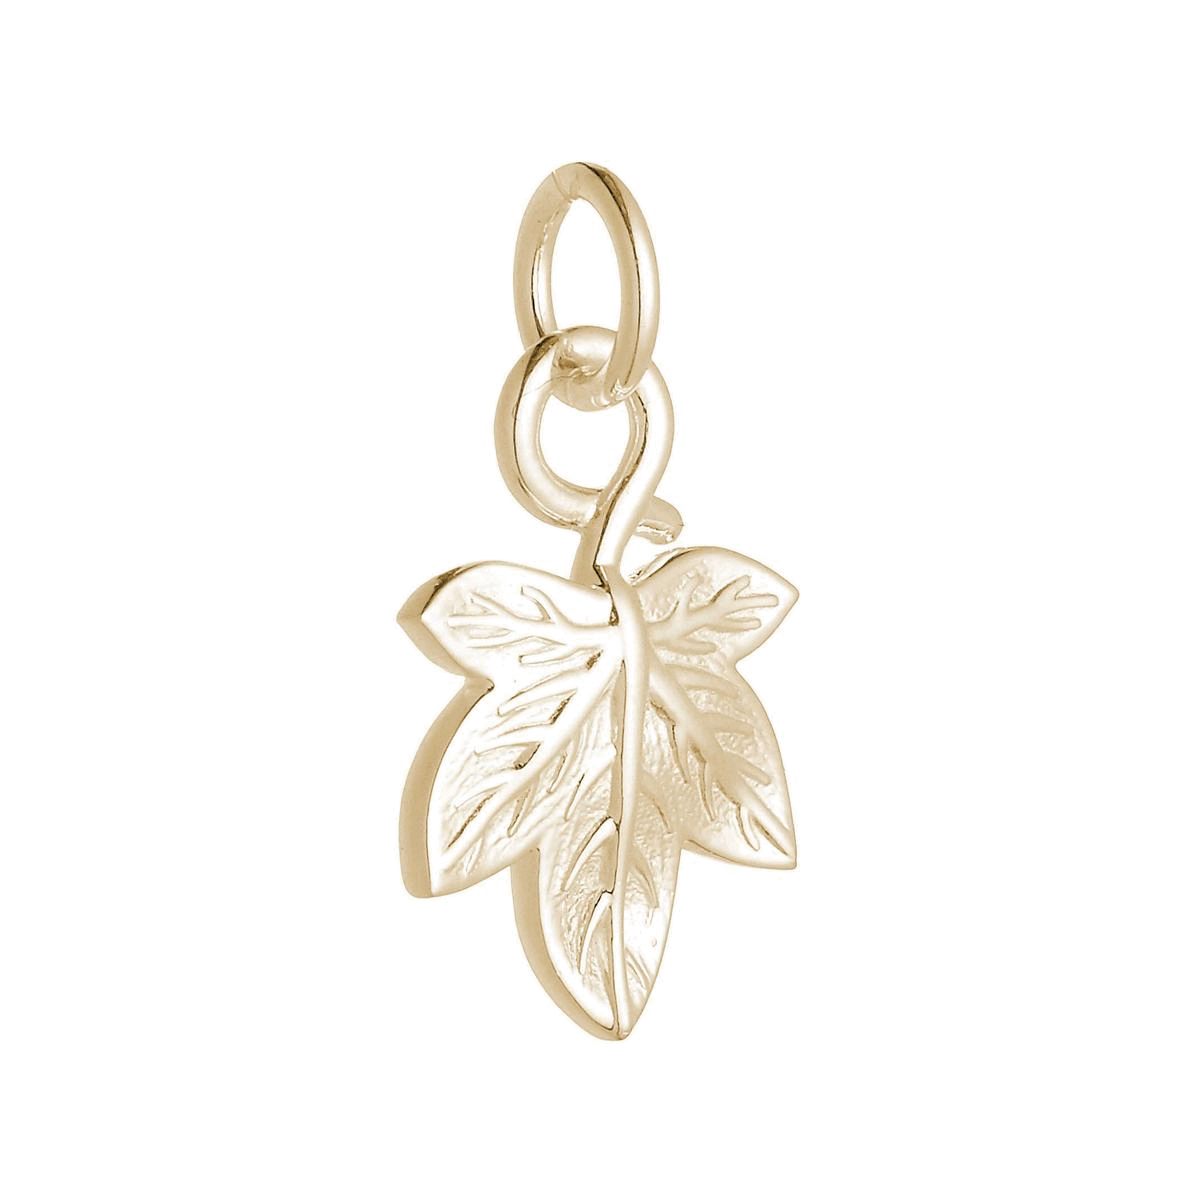 solid gold ivy leaf charm for necklace or bracelet